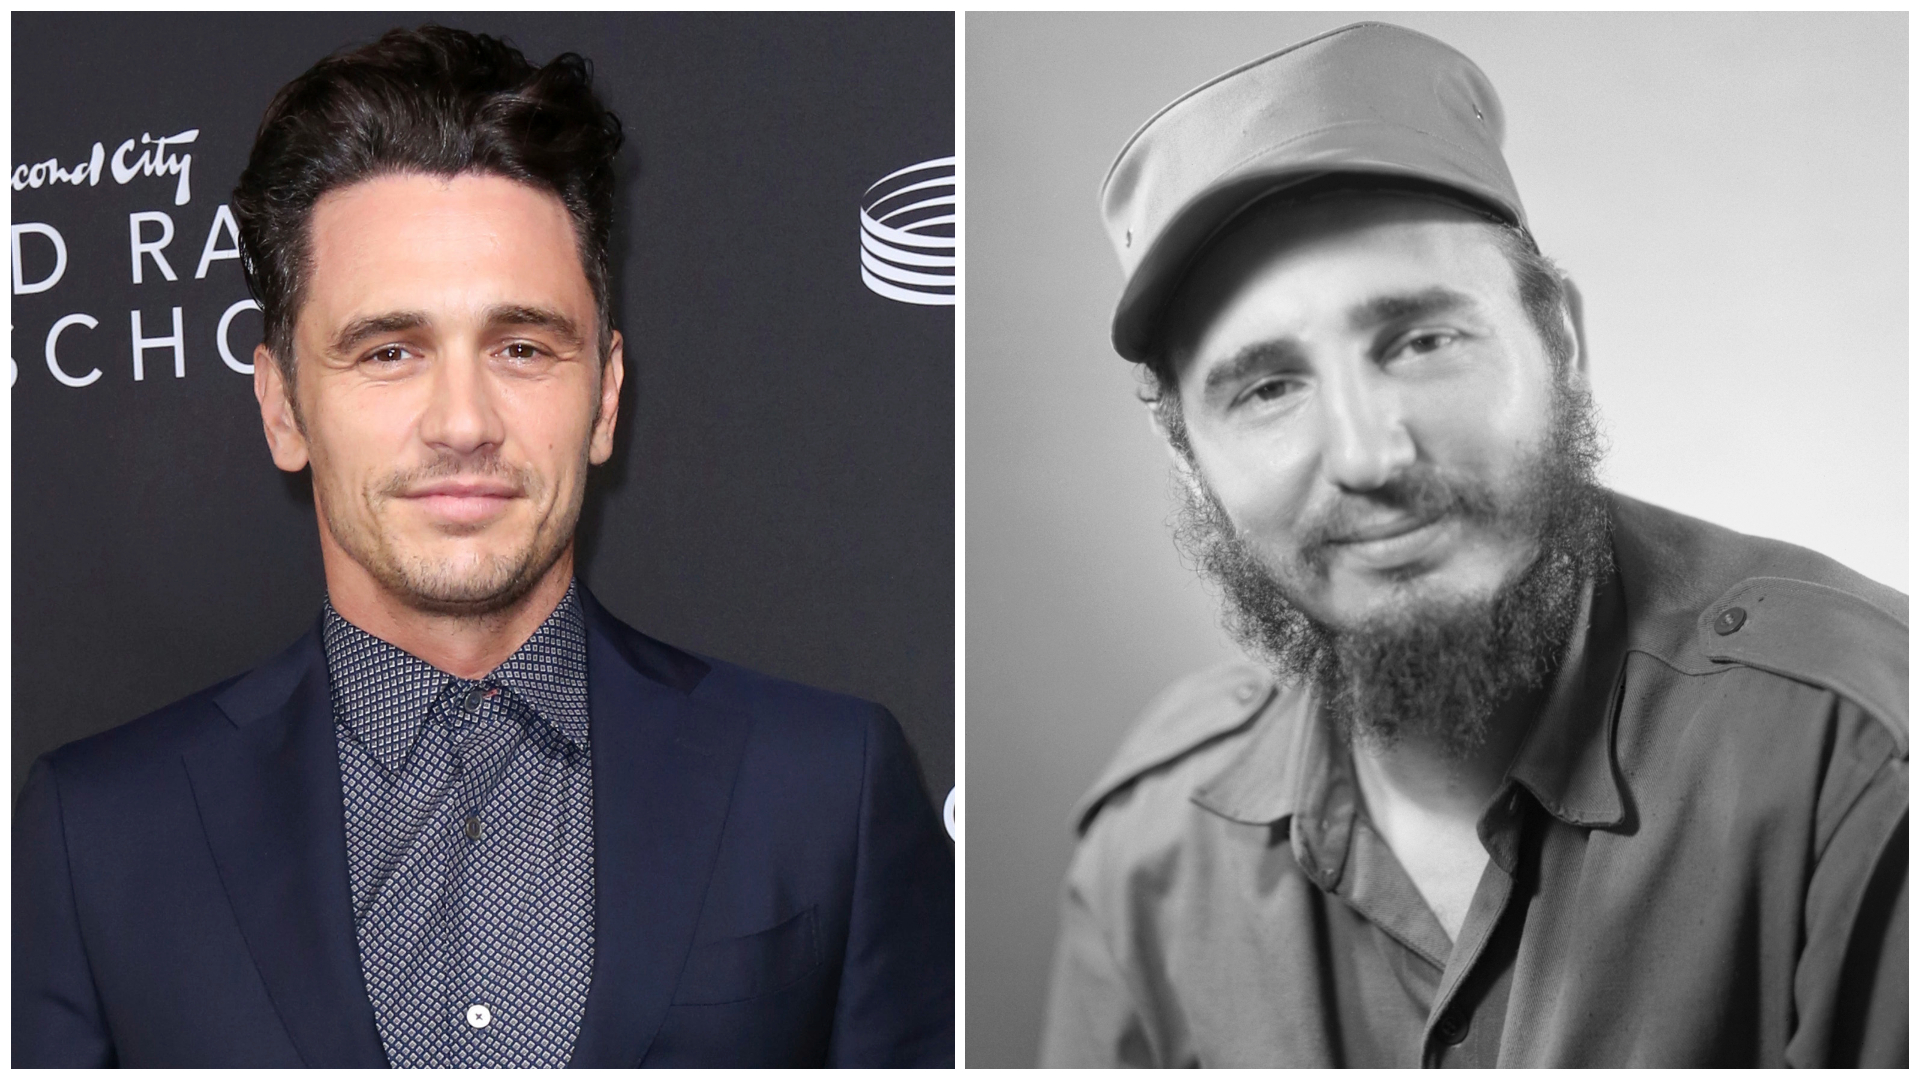 James Franco to play Fidel Castro in biopic